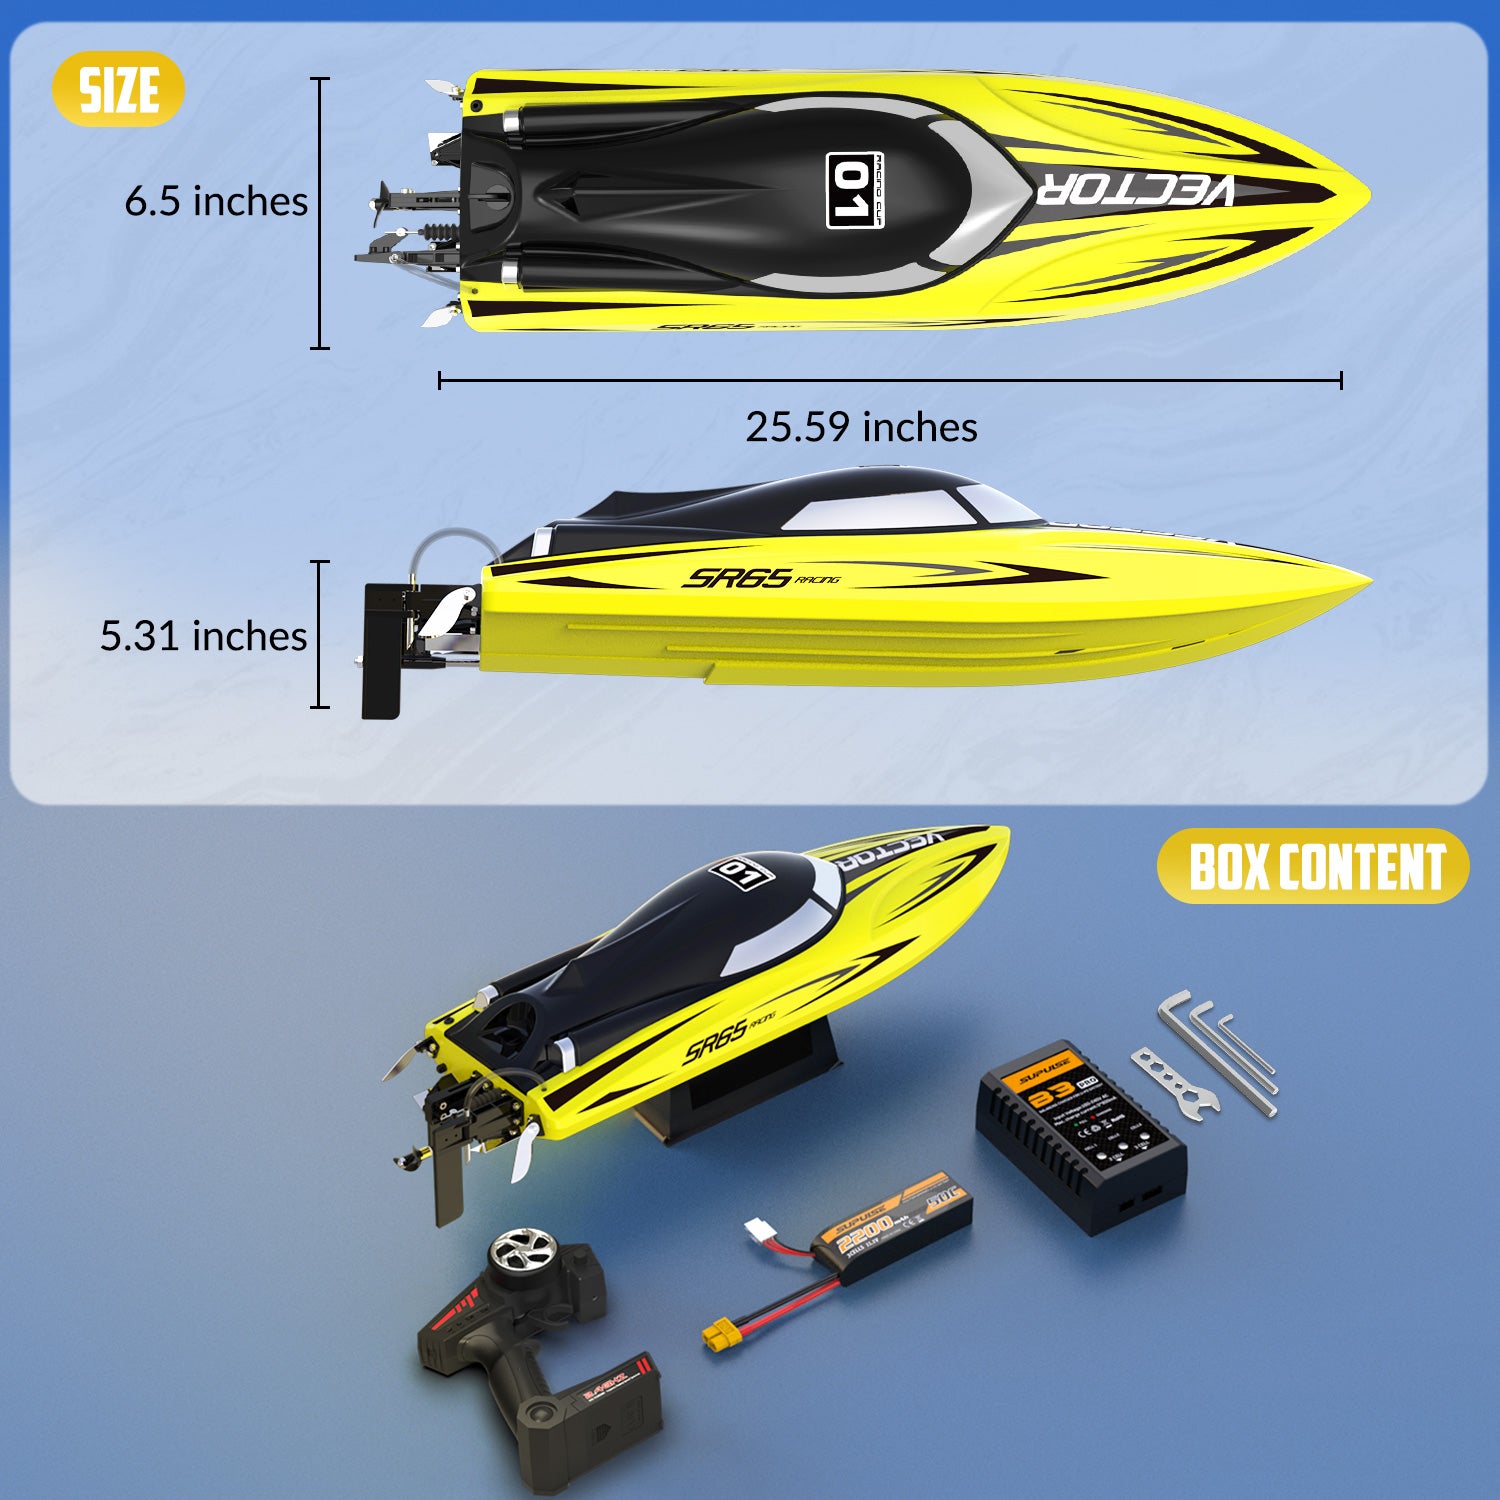 ベクターSR6535mphラジコンレーシングボート、自動ロールバック792-5RTRイエロー